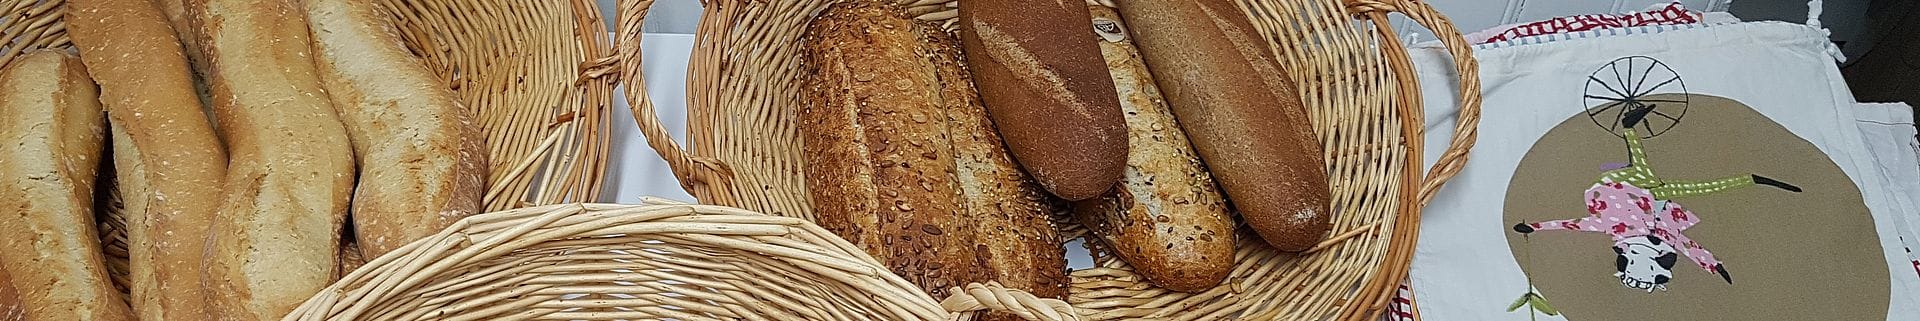 Surcyclage - Le Rêve – Servir le pain avec des contenants durables